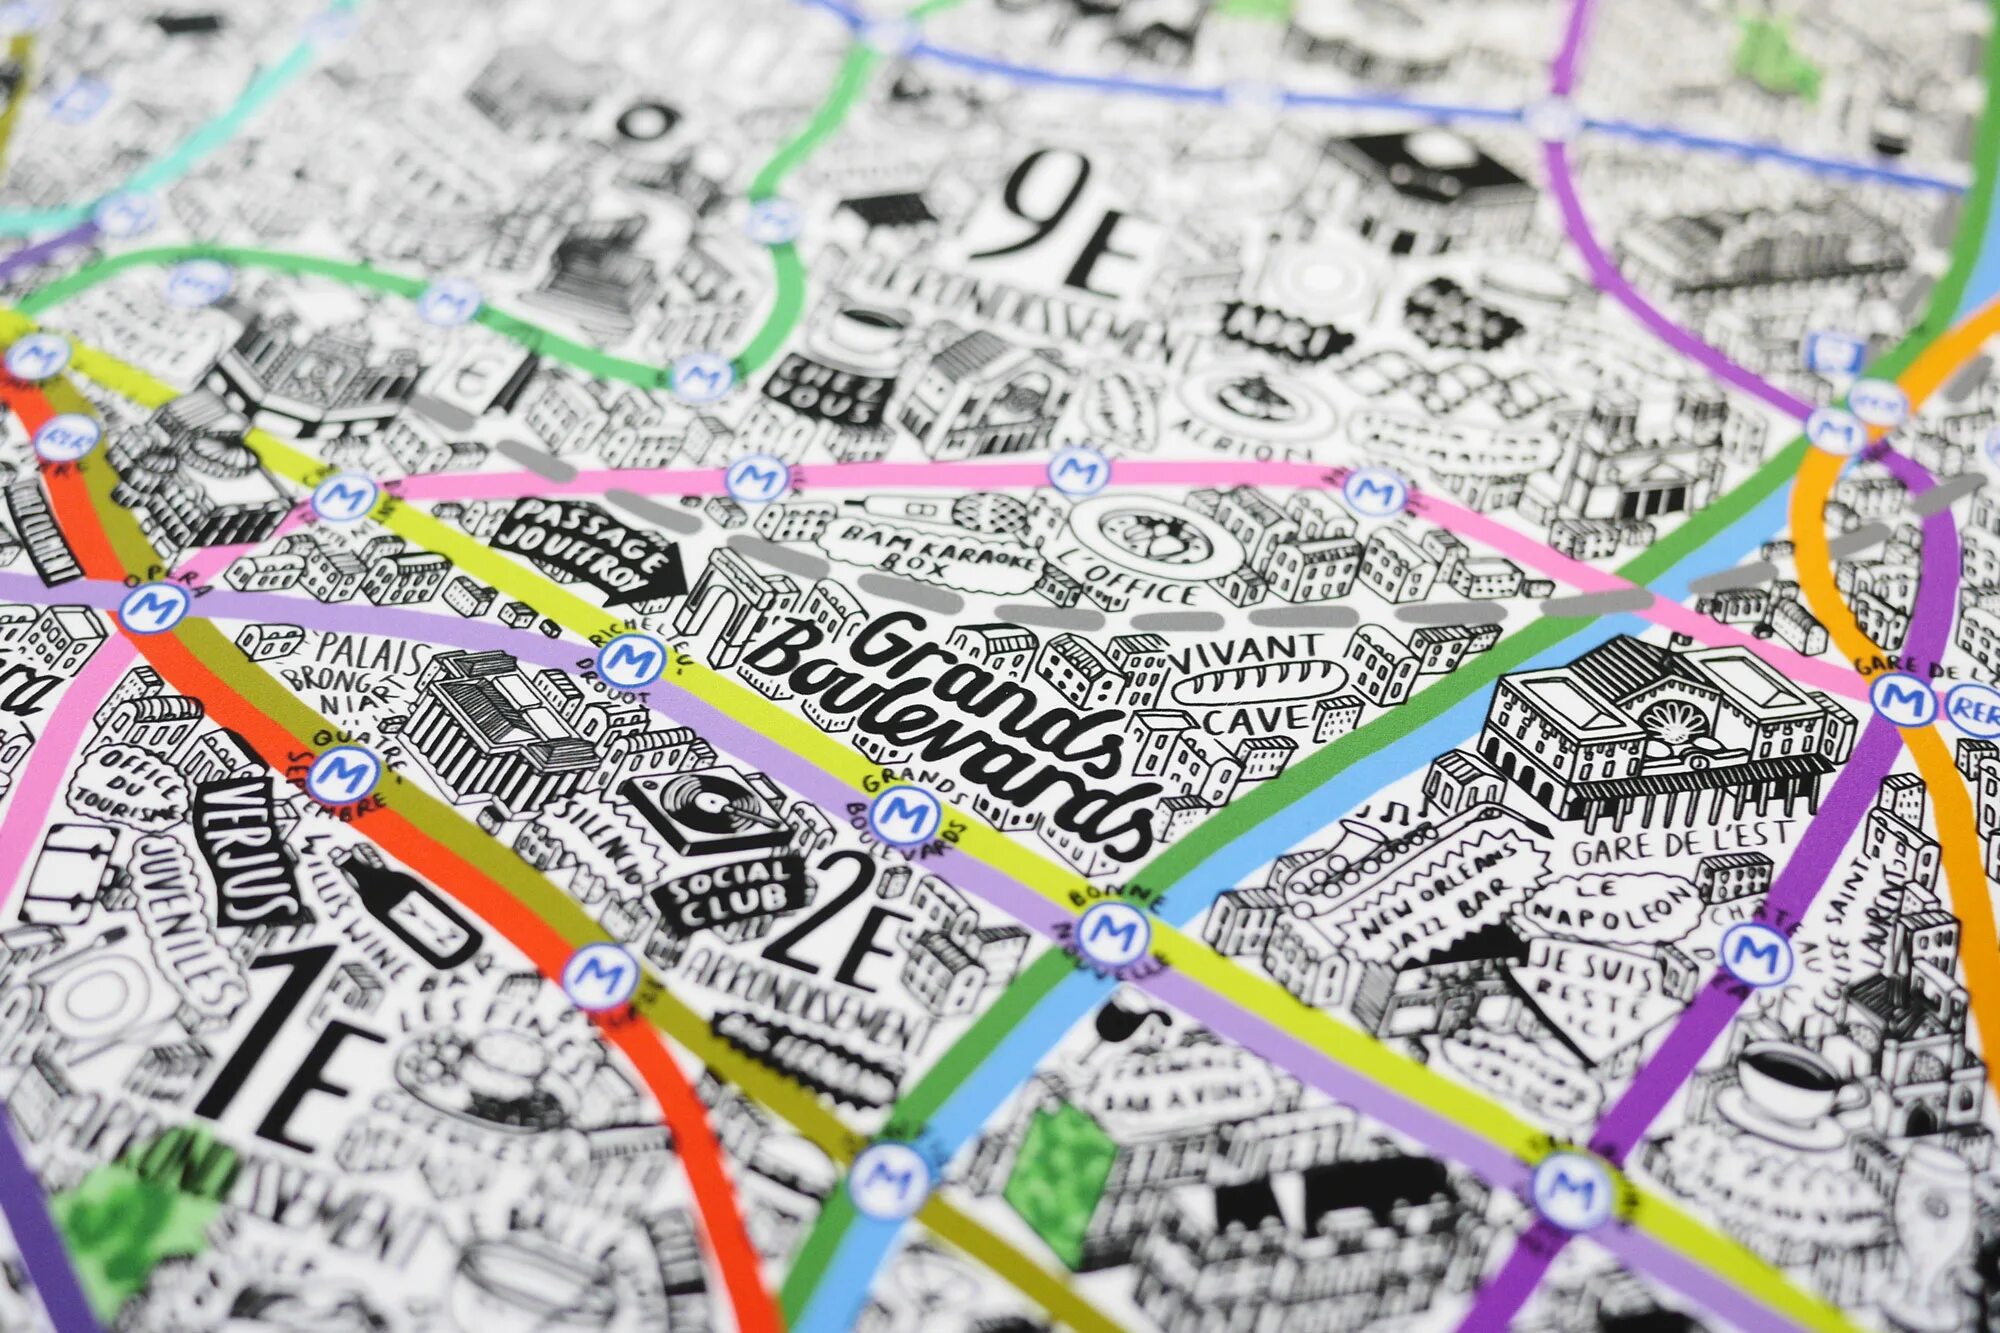 O maps. Креативная карта города. Дизайнерские карты городов. Необычные карты городов. Необычные дизайнерские карты города.